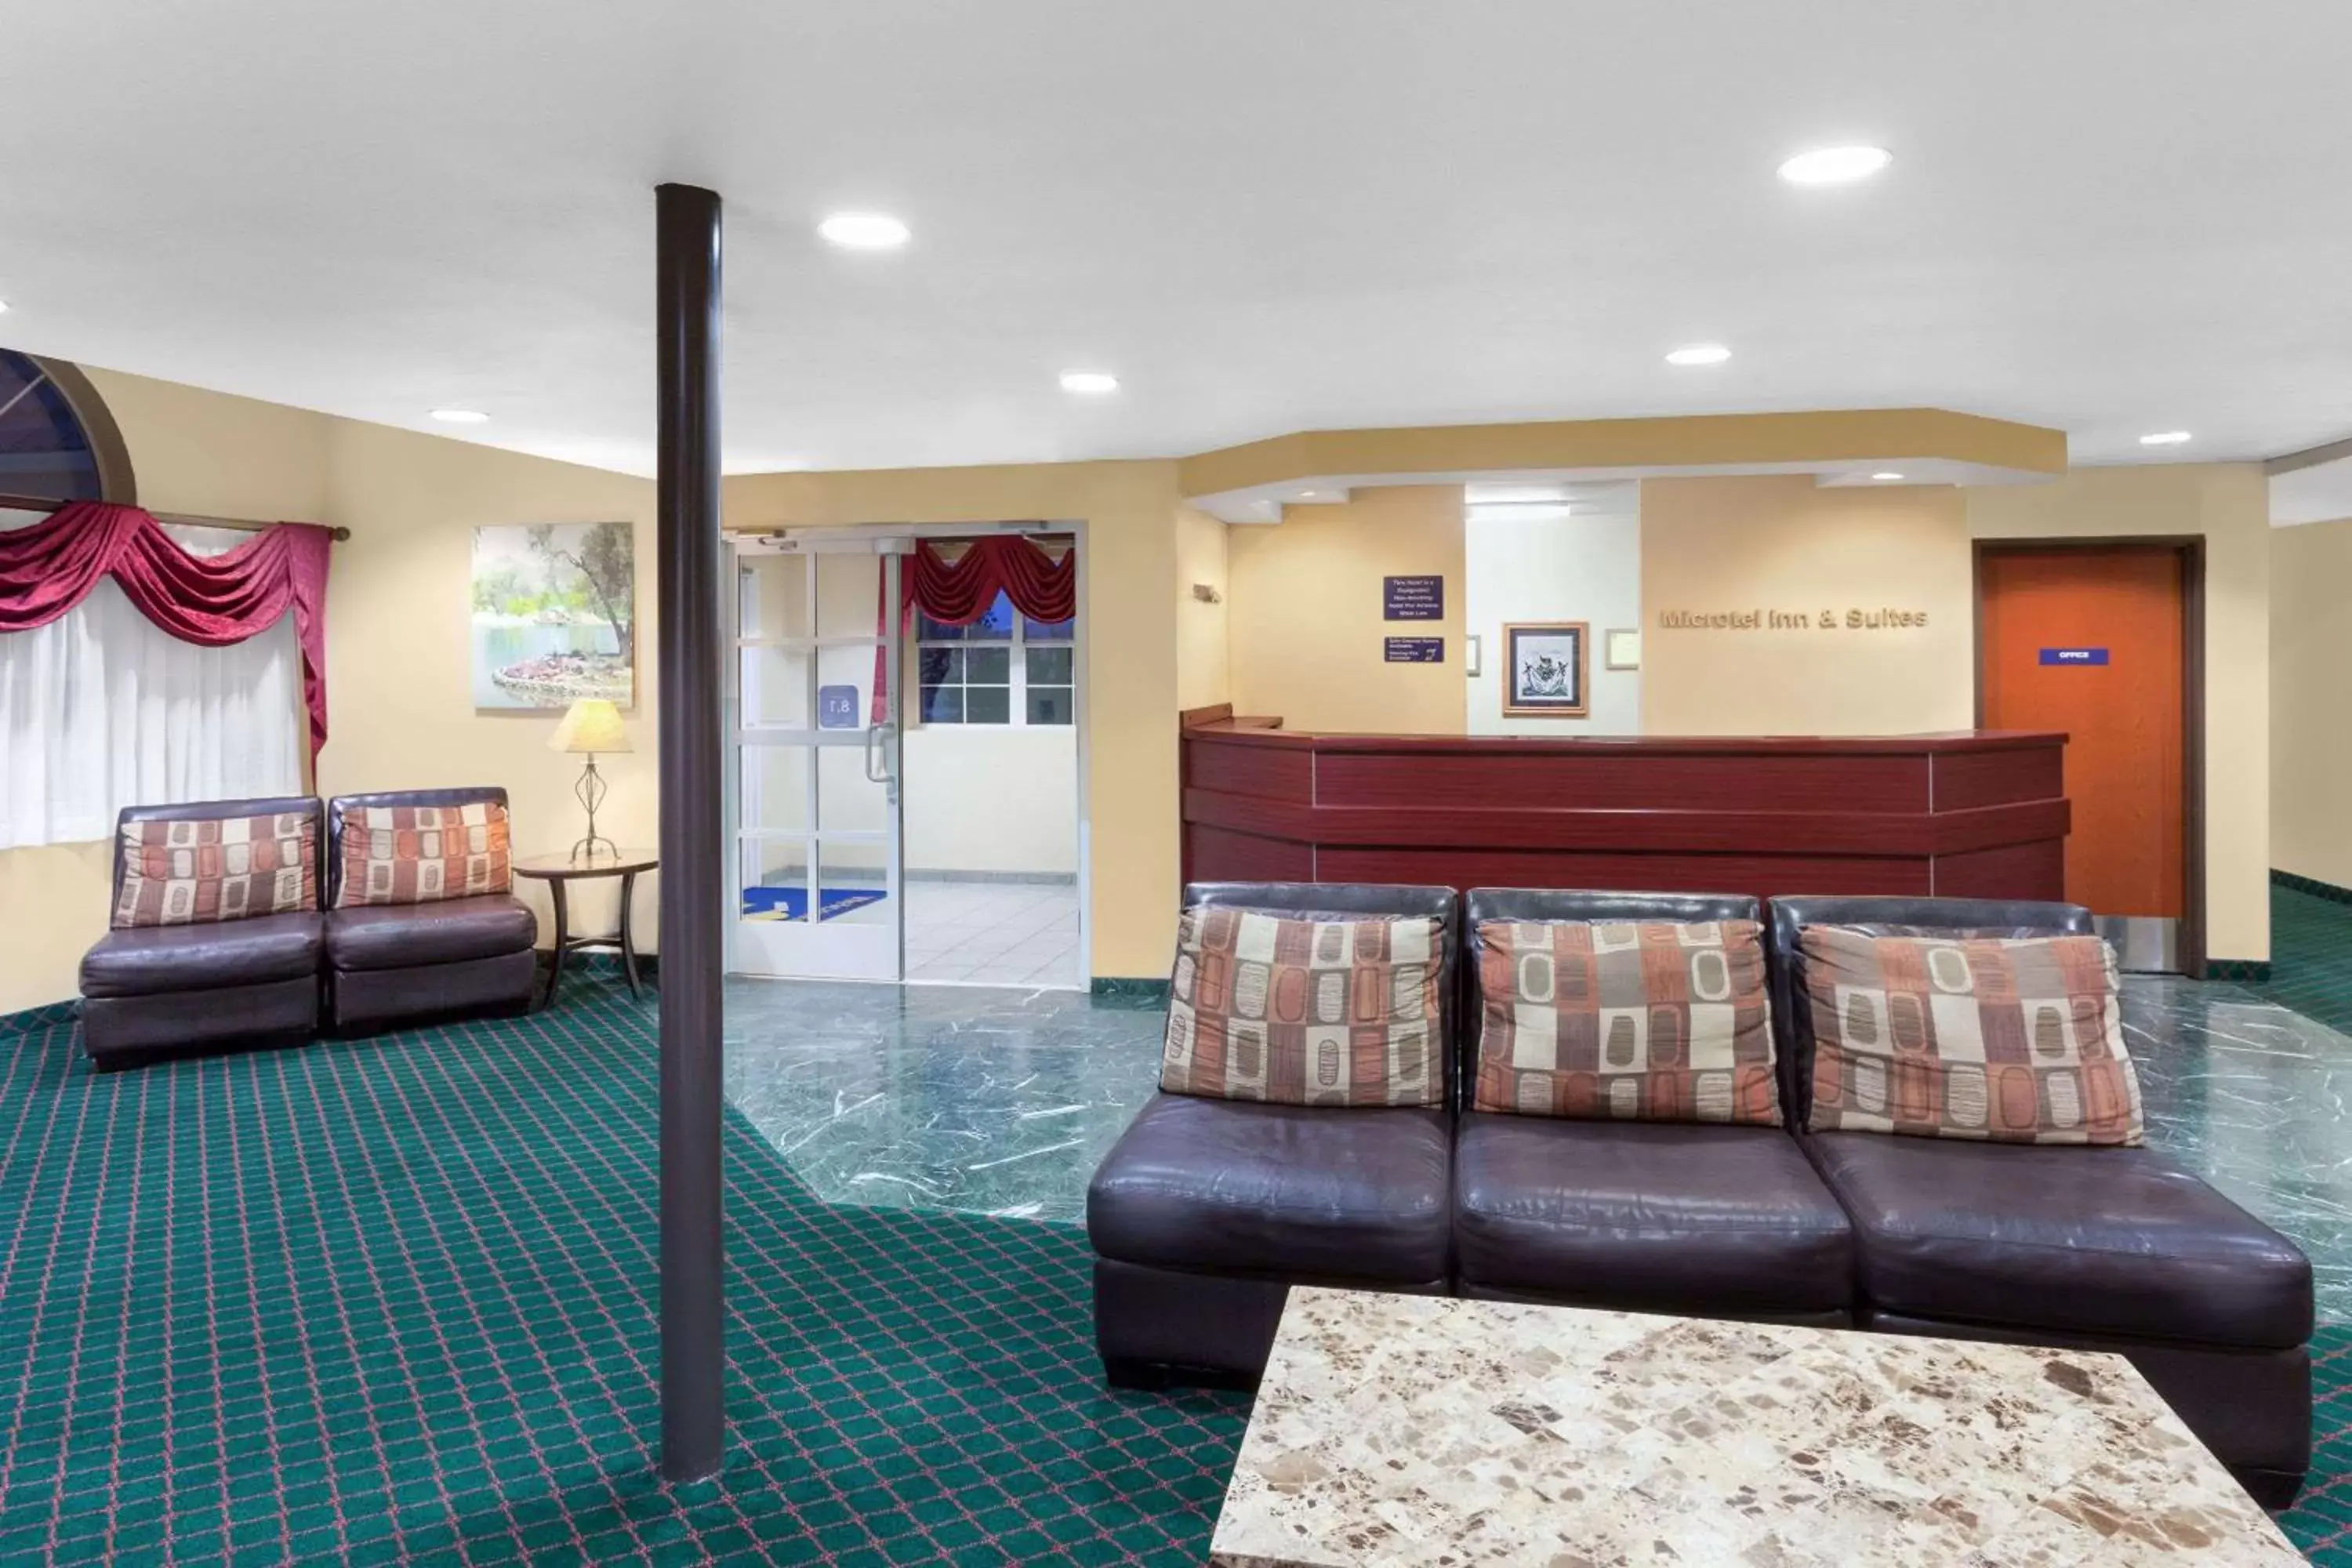 Lobby or reception, Lobby/Reception in Microtel Inn & Suites by Wyndham Wellton